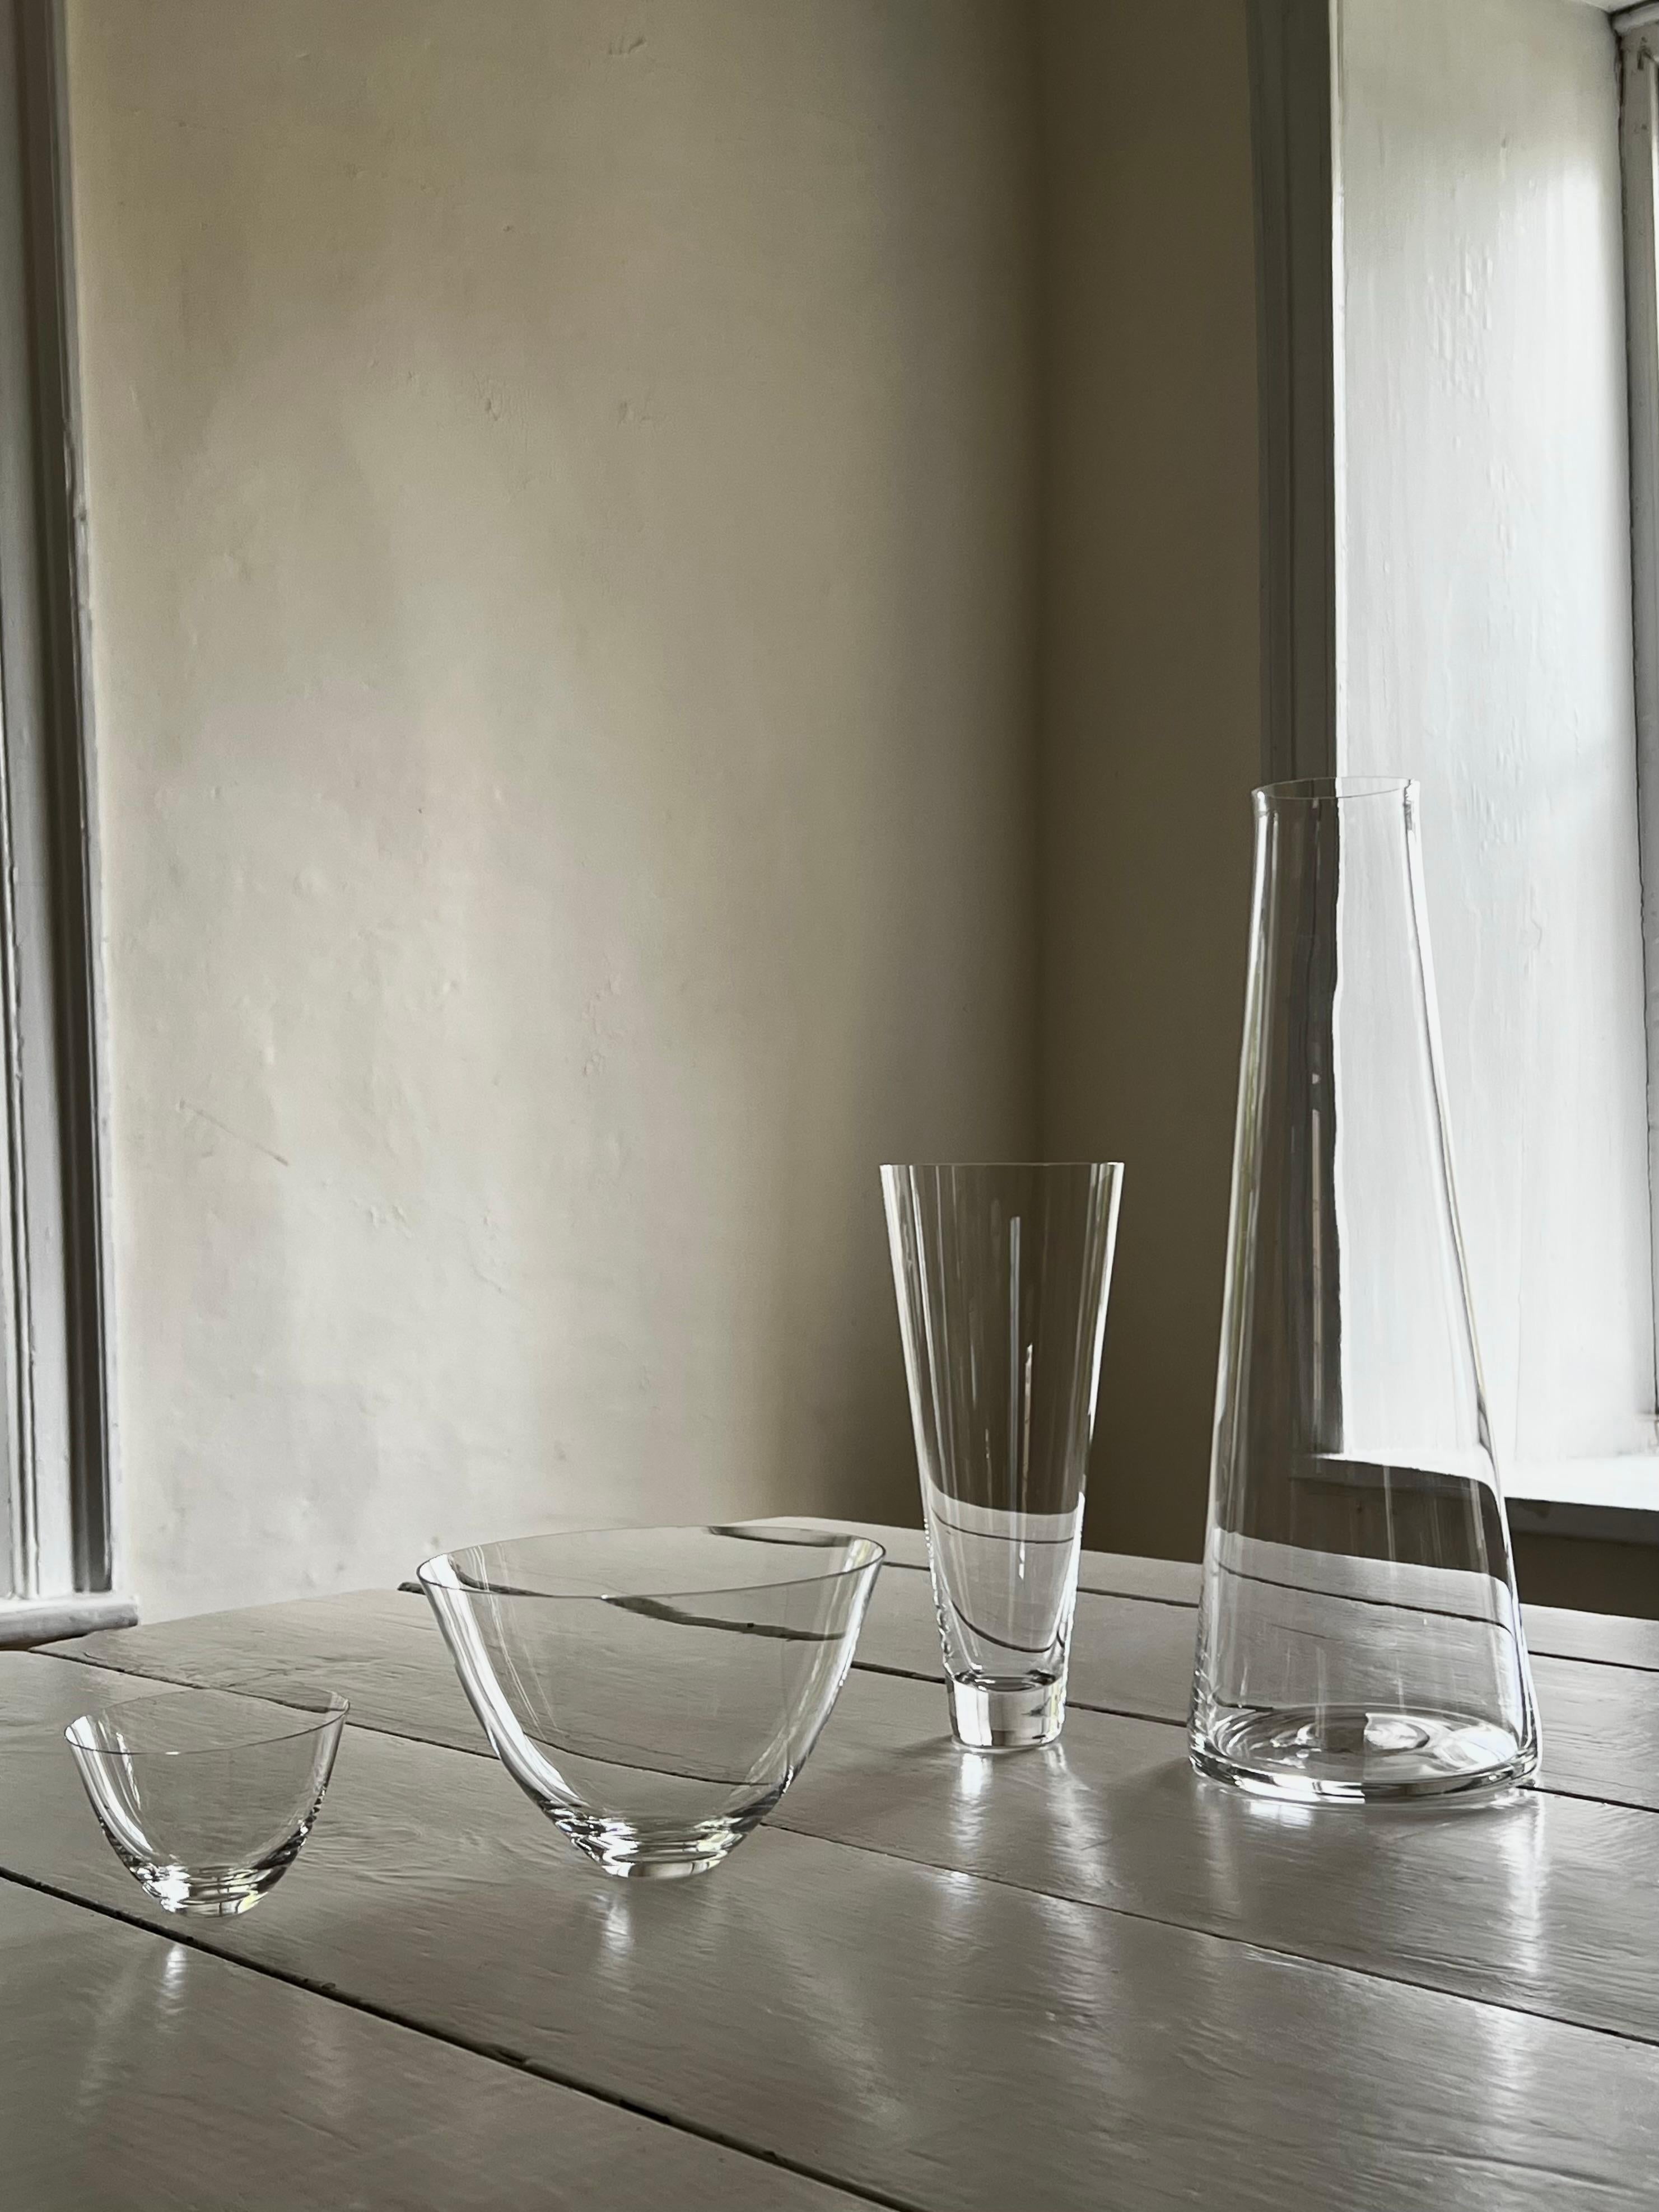 Lancés avec Takashimaya en 1999, ces verres à pilsner en cristal soufflé à la main sont devenus un classique moderne. Chaque pièce de Deborah Ehrlich est conçue pour la force et la clarté extraordinaires du cristal suédois. La simplicité du design,